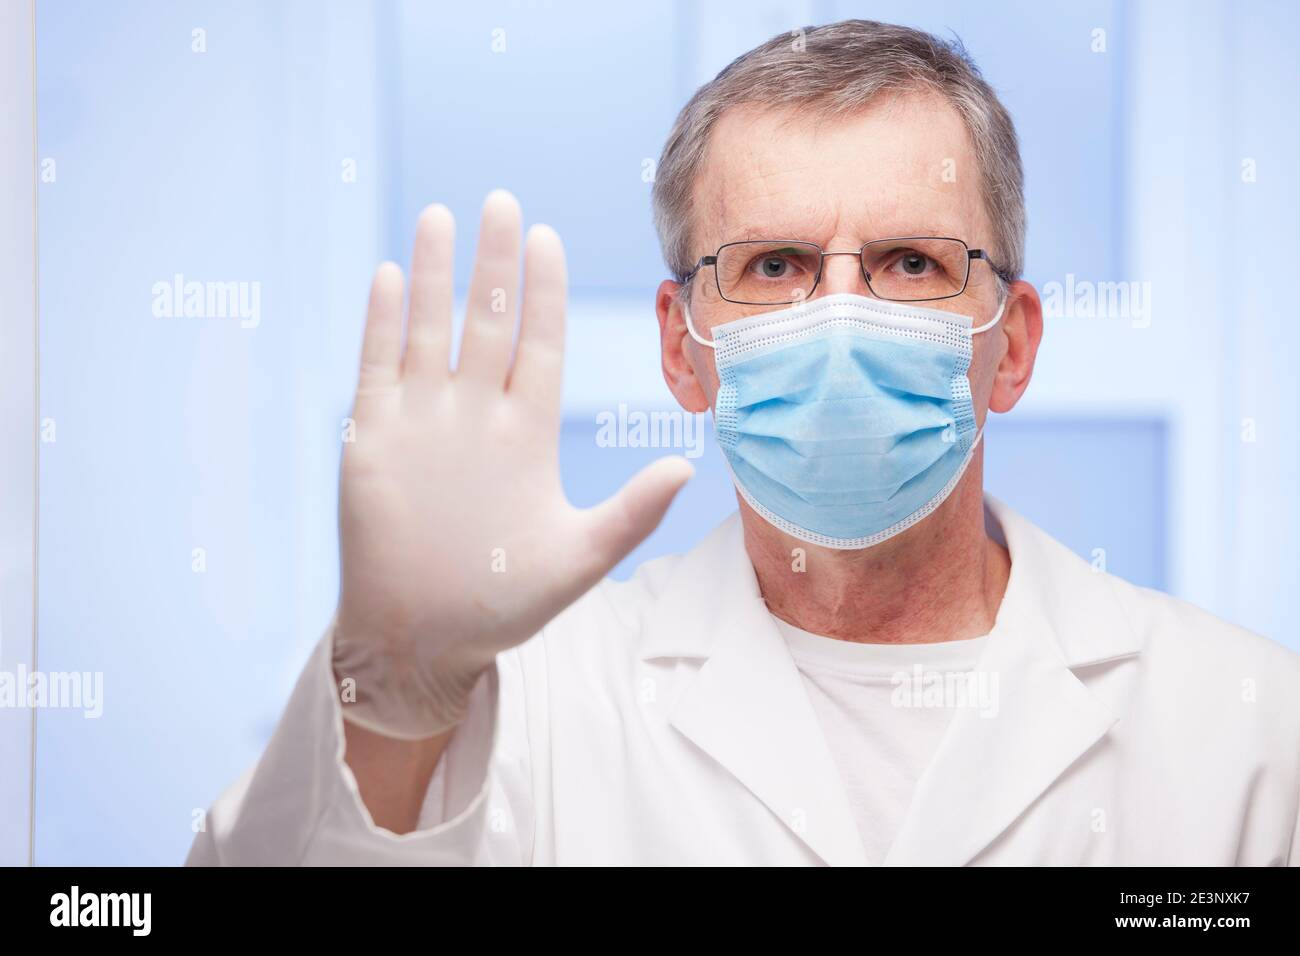 Arzt mit OP-Maske gestikulierenden Stopp für covid-19 - Fokus Auf dem Gesicht Stockfoto